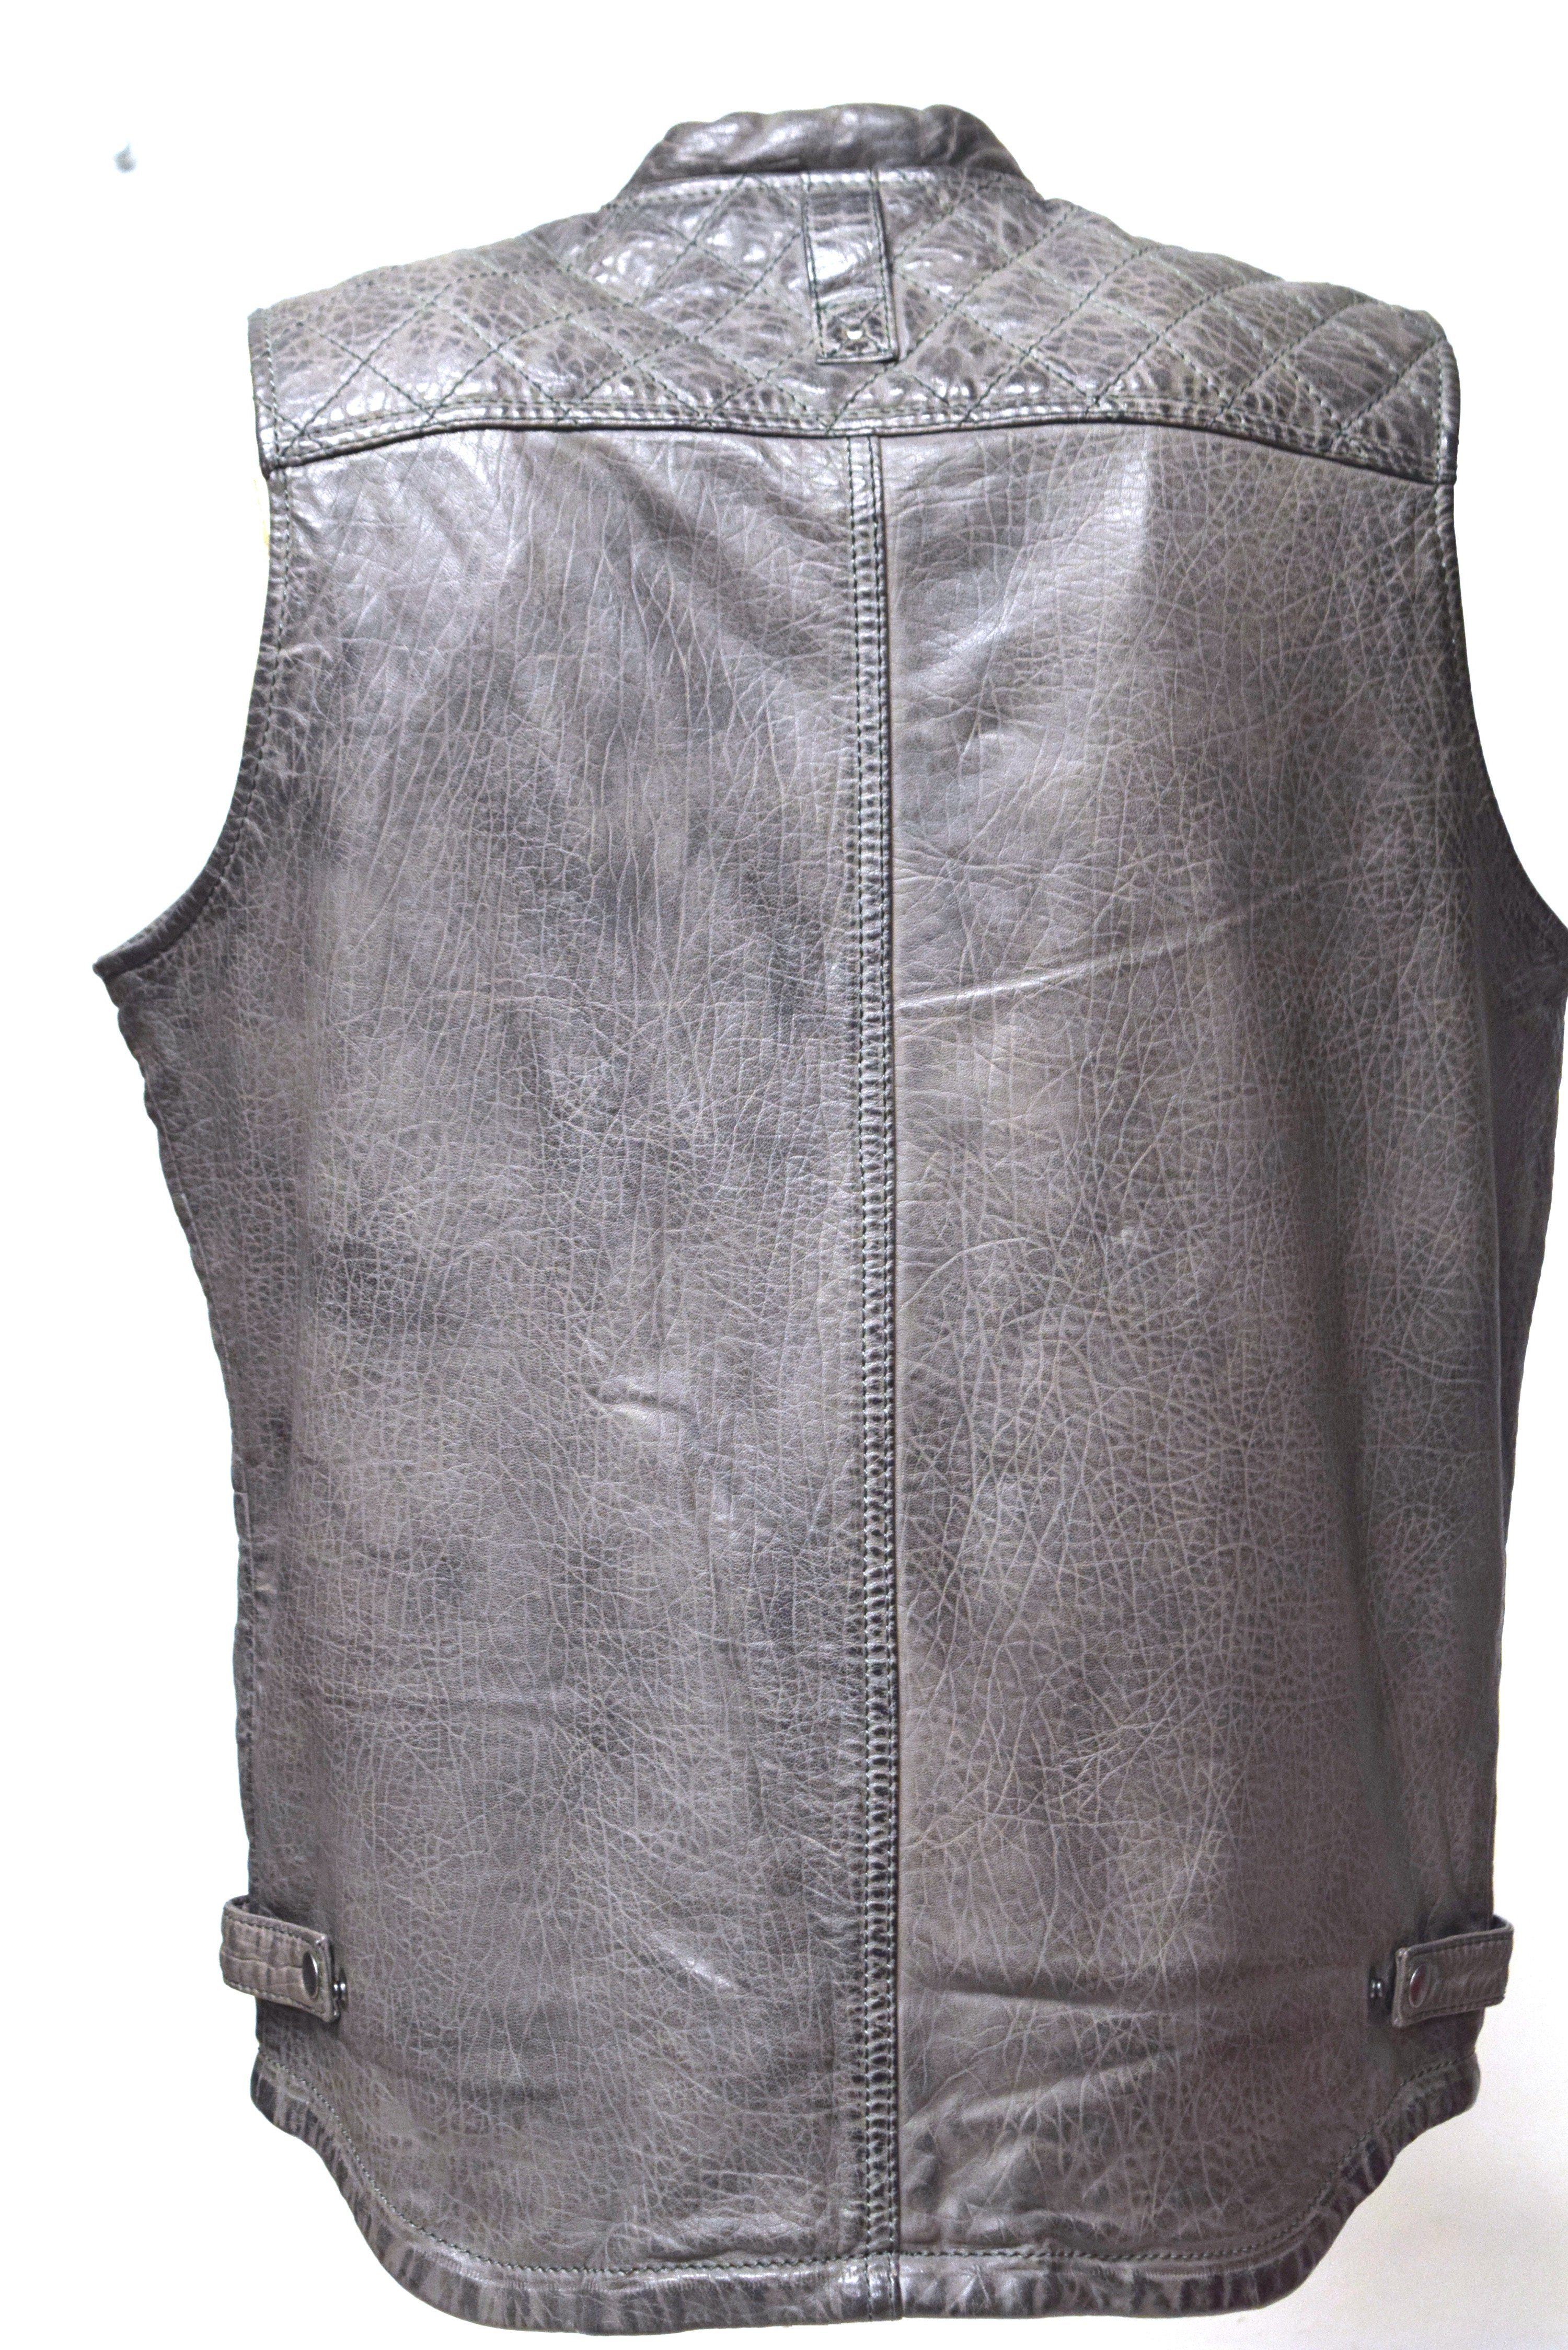 grau Leather Zimmert Fronttaschen, Lederweste Schwarz Nilo Cognac, praktische Braun,